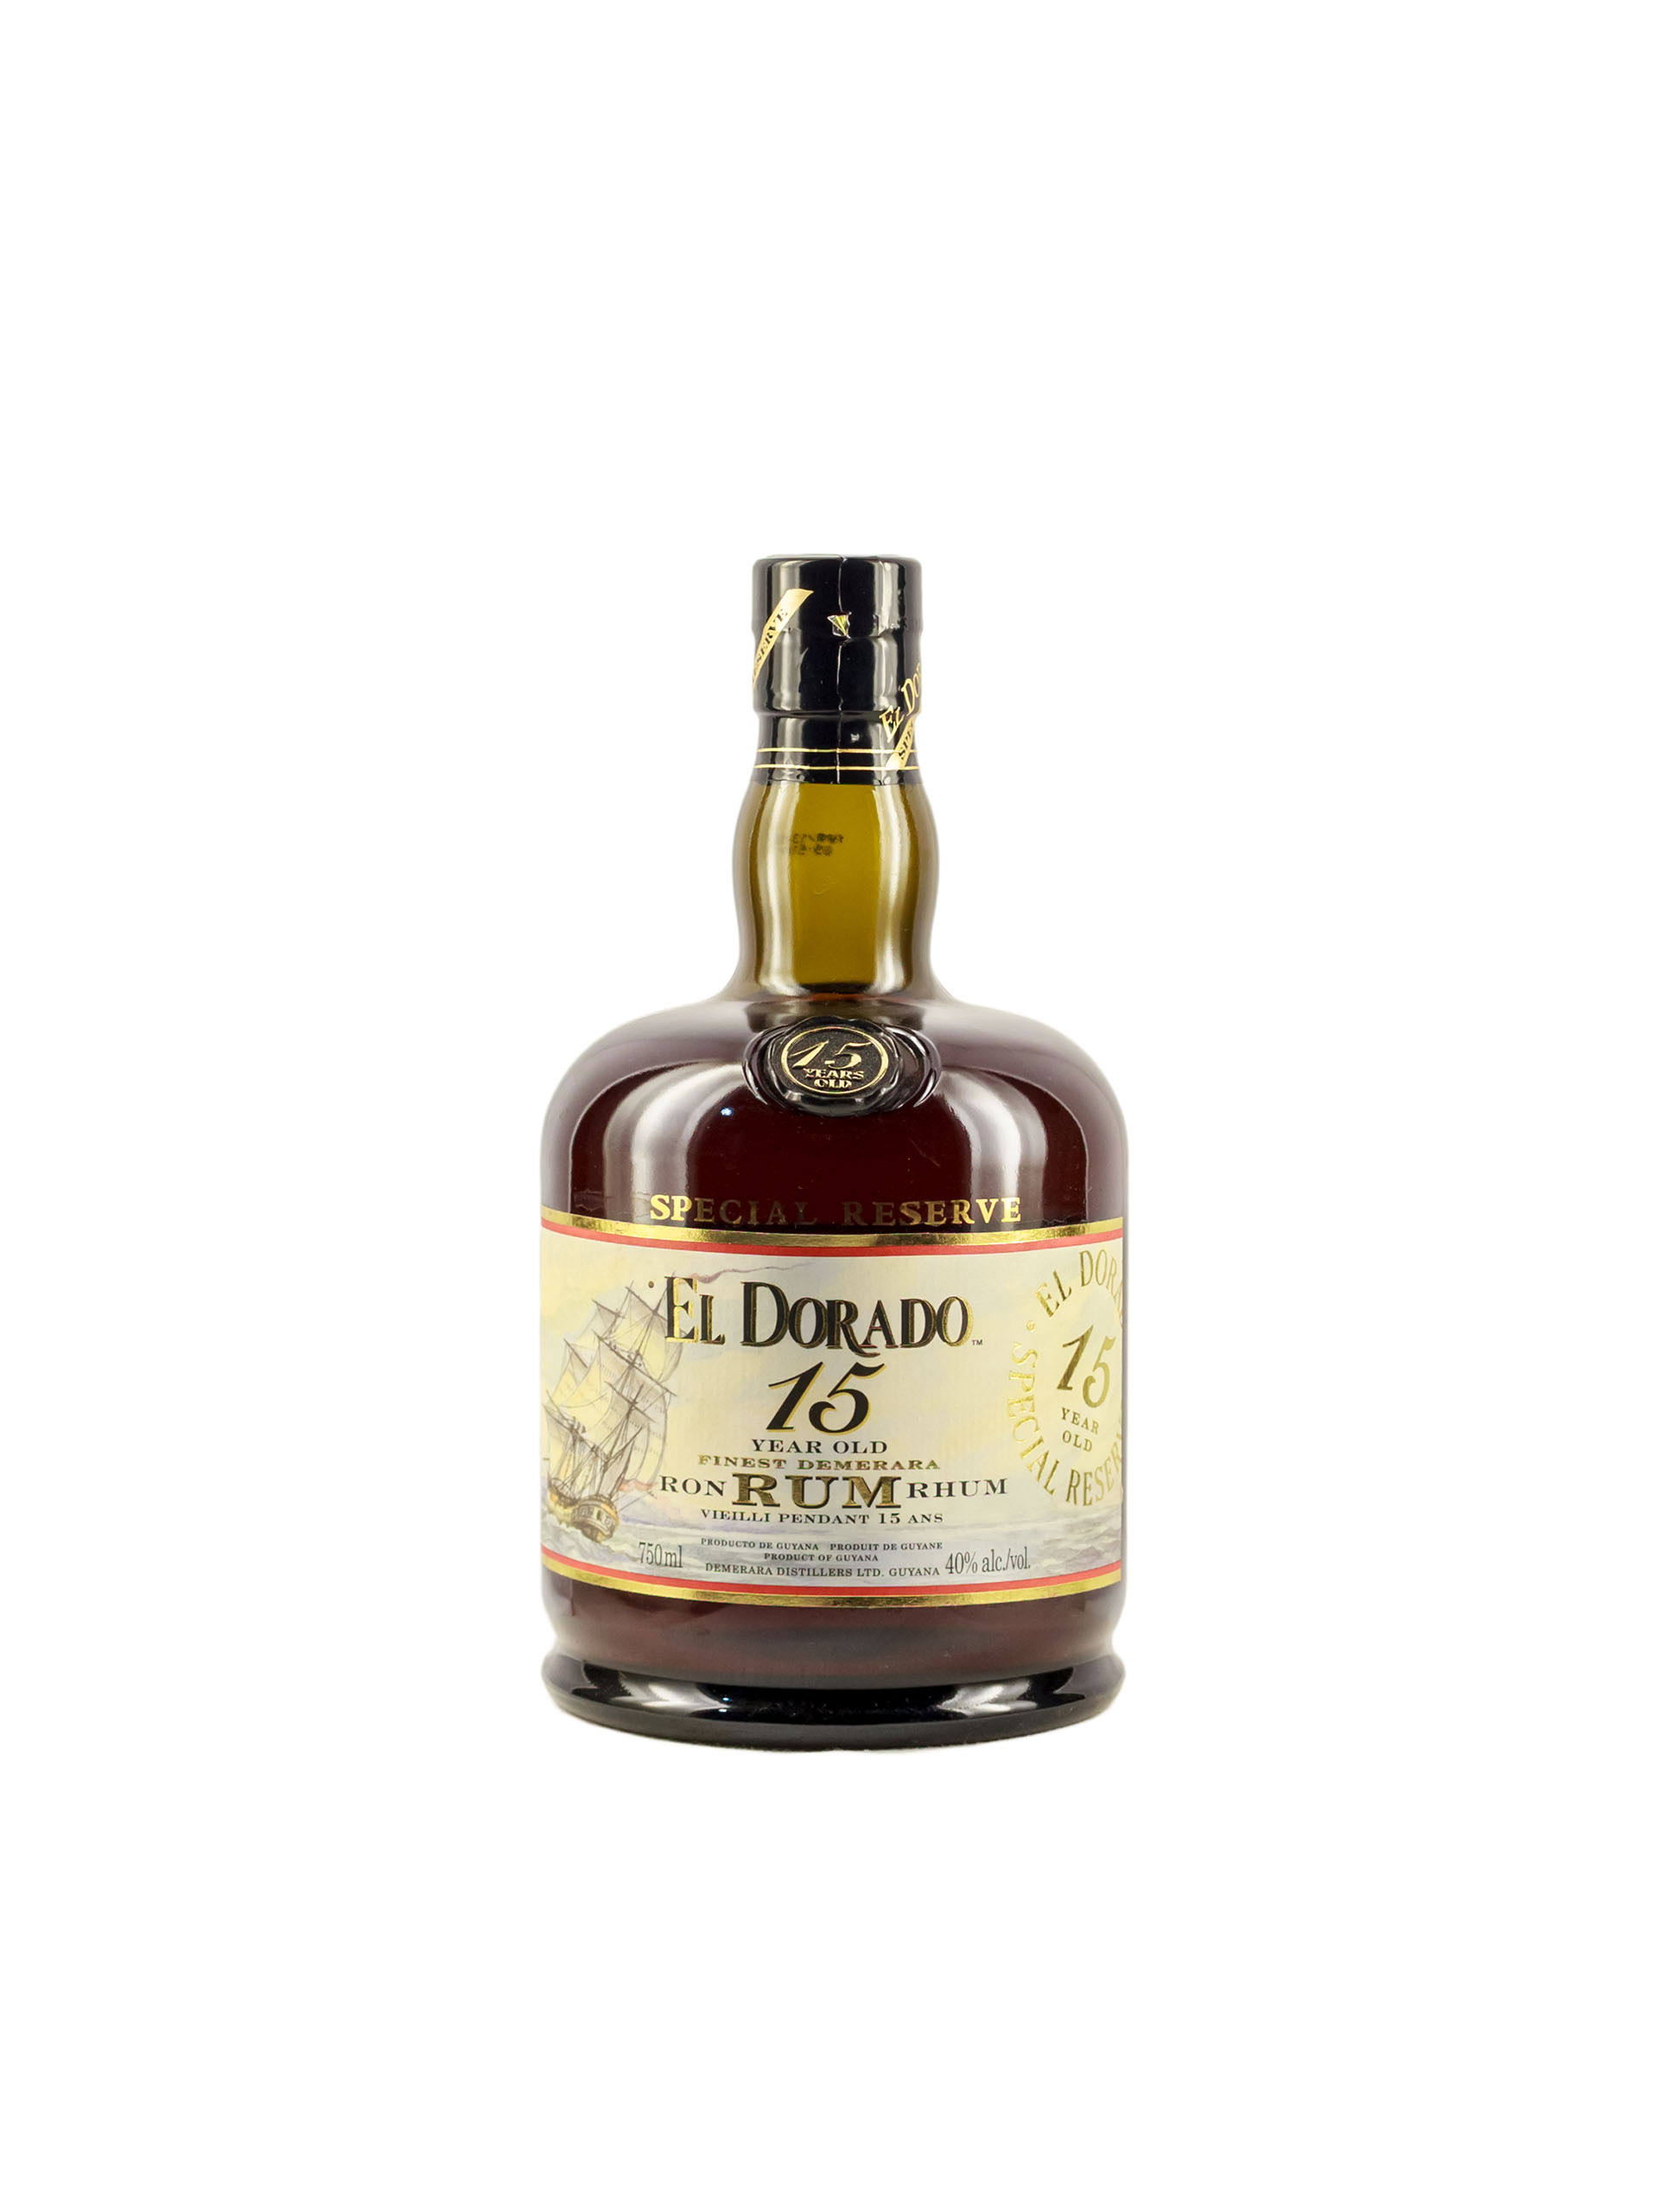 El Dorado Rum - 15 Year Old, 750ml